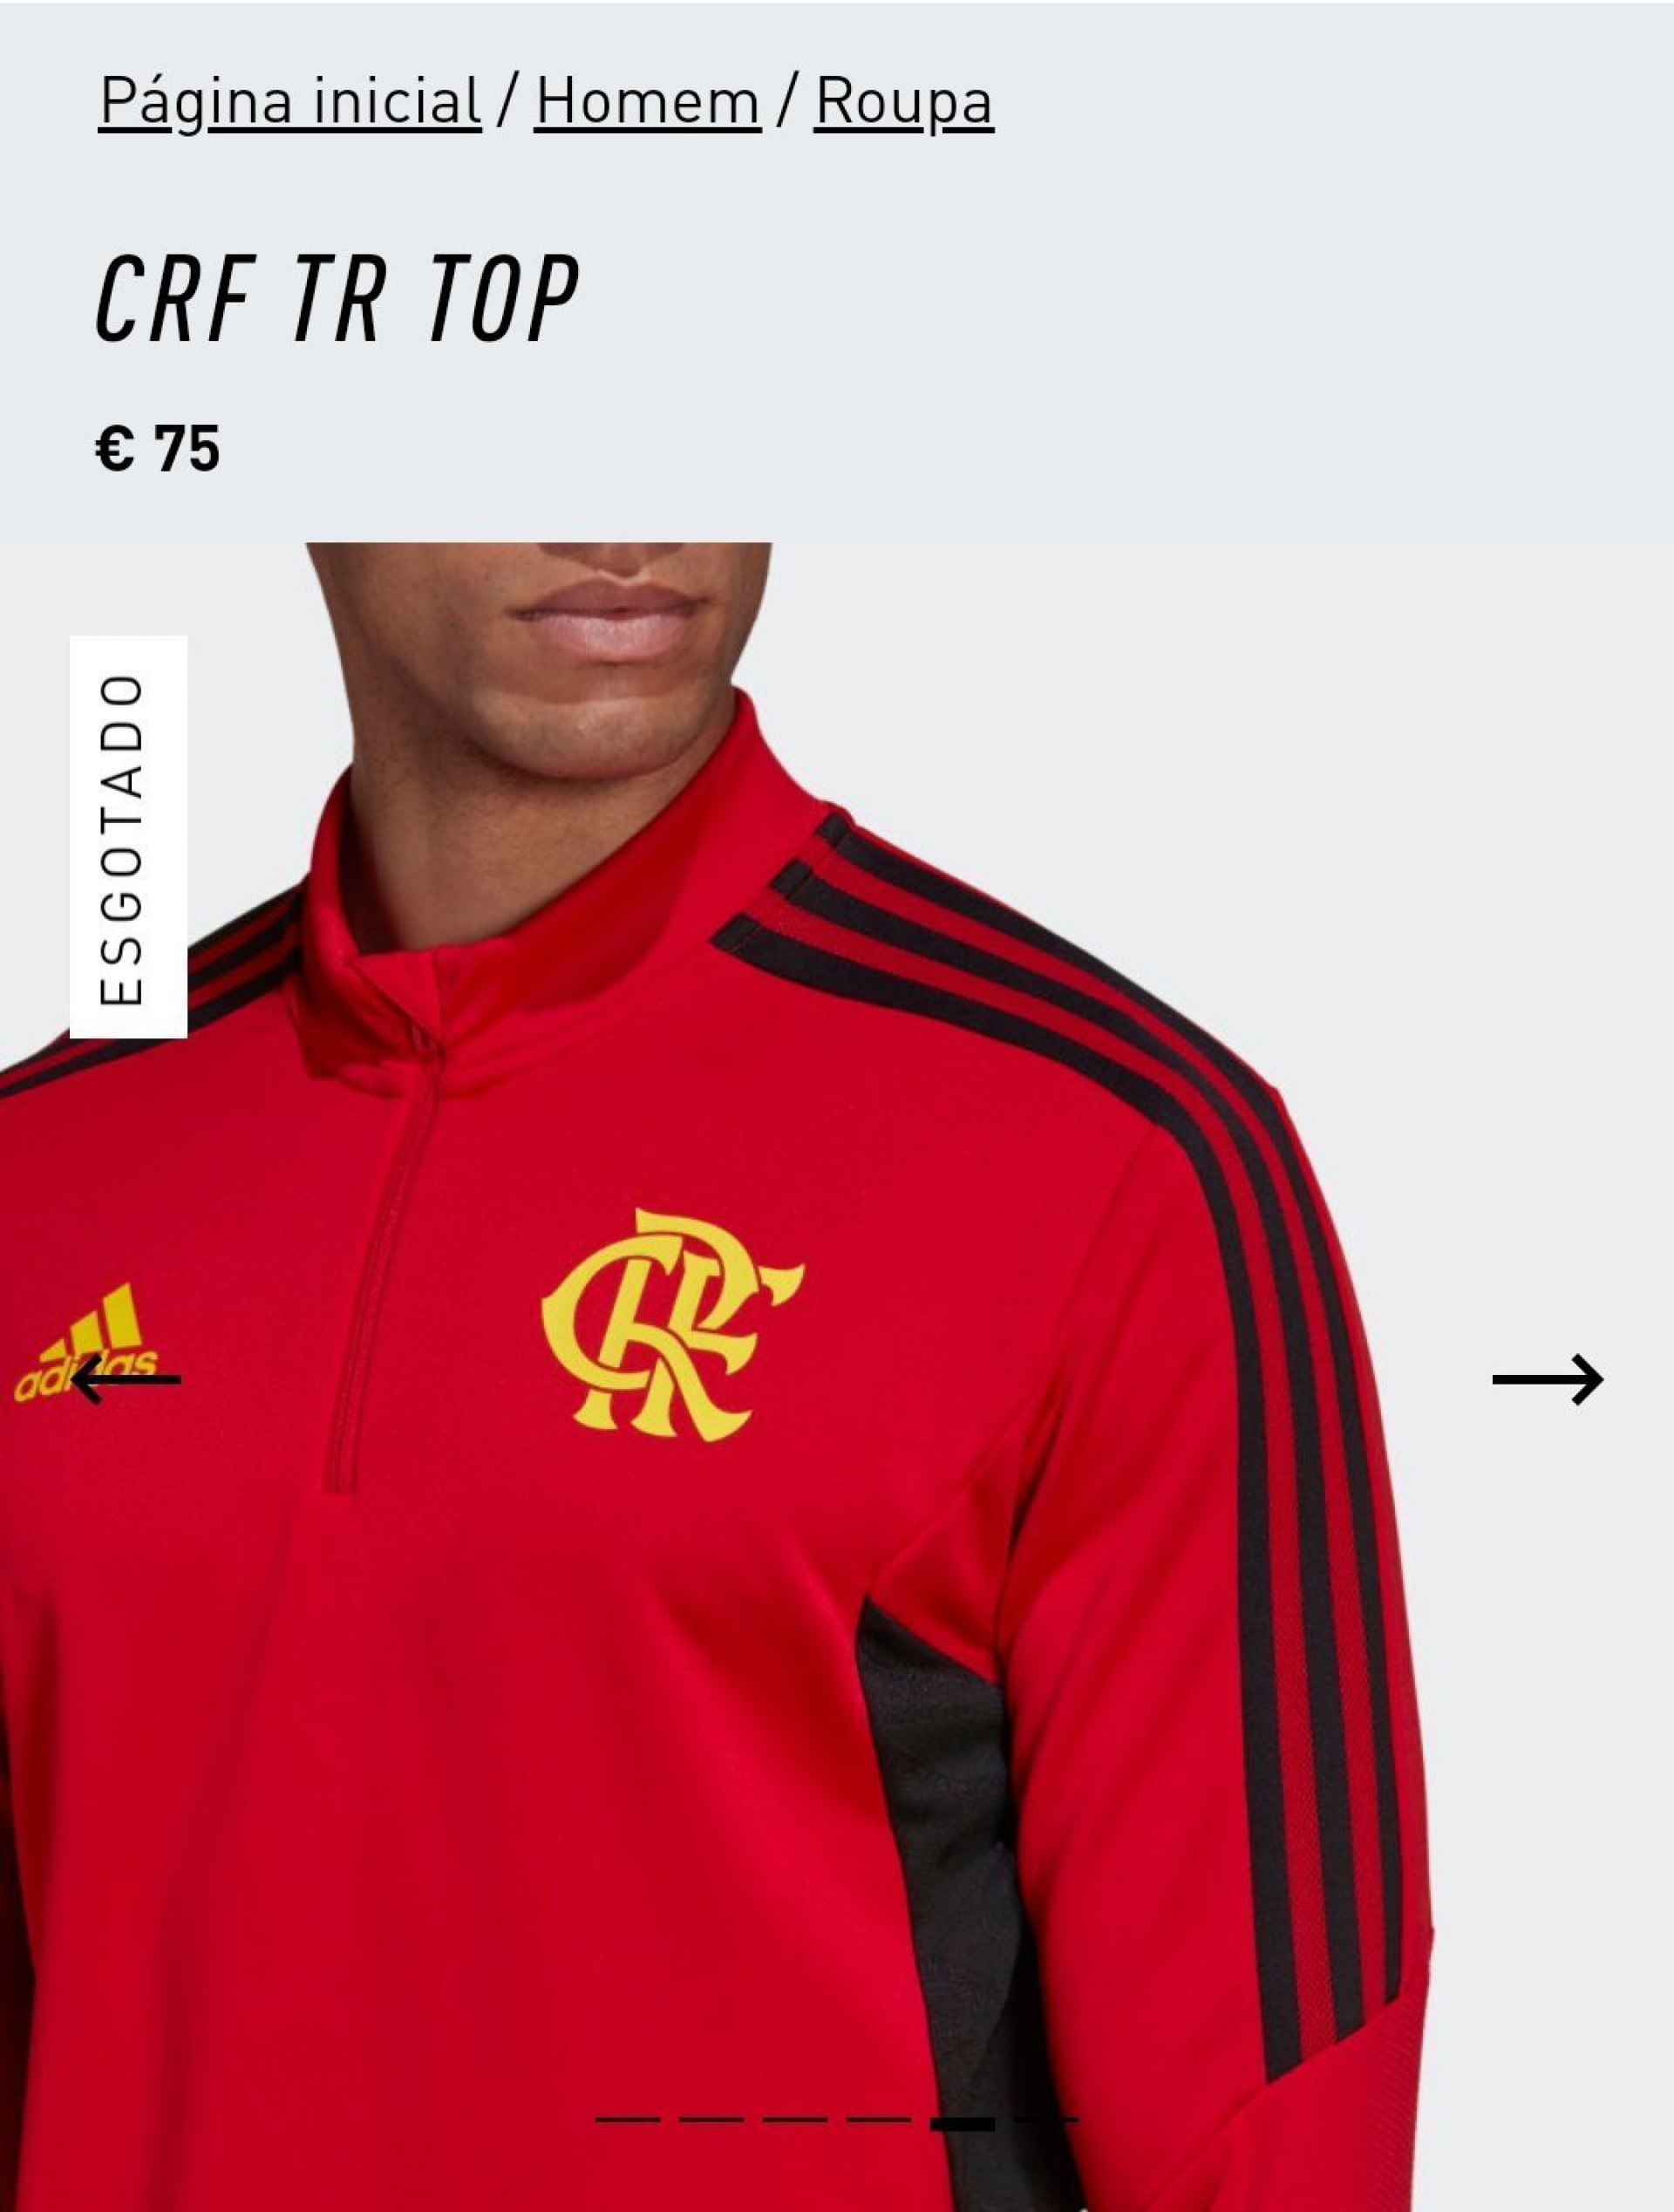 Novo casaco do Flamengo - Reprodução/Adidas